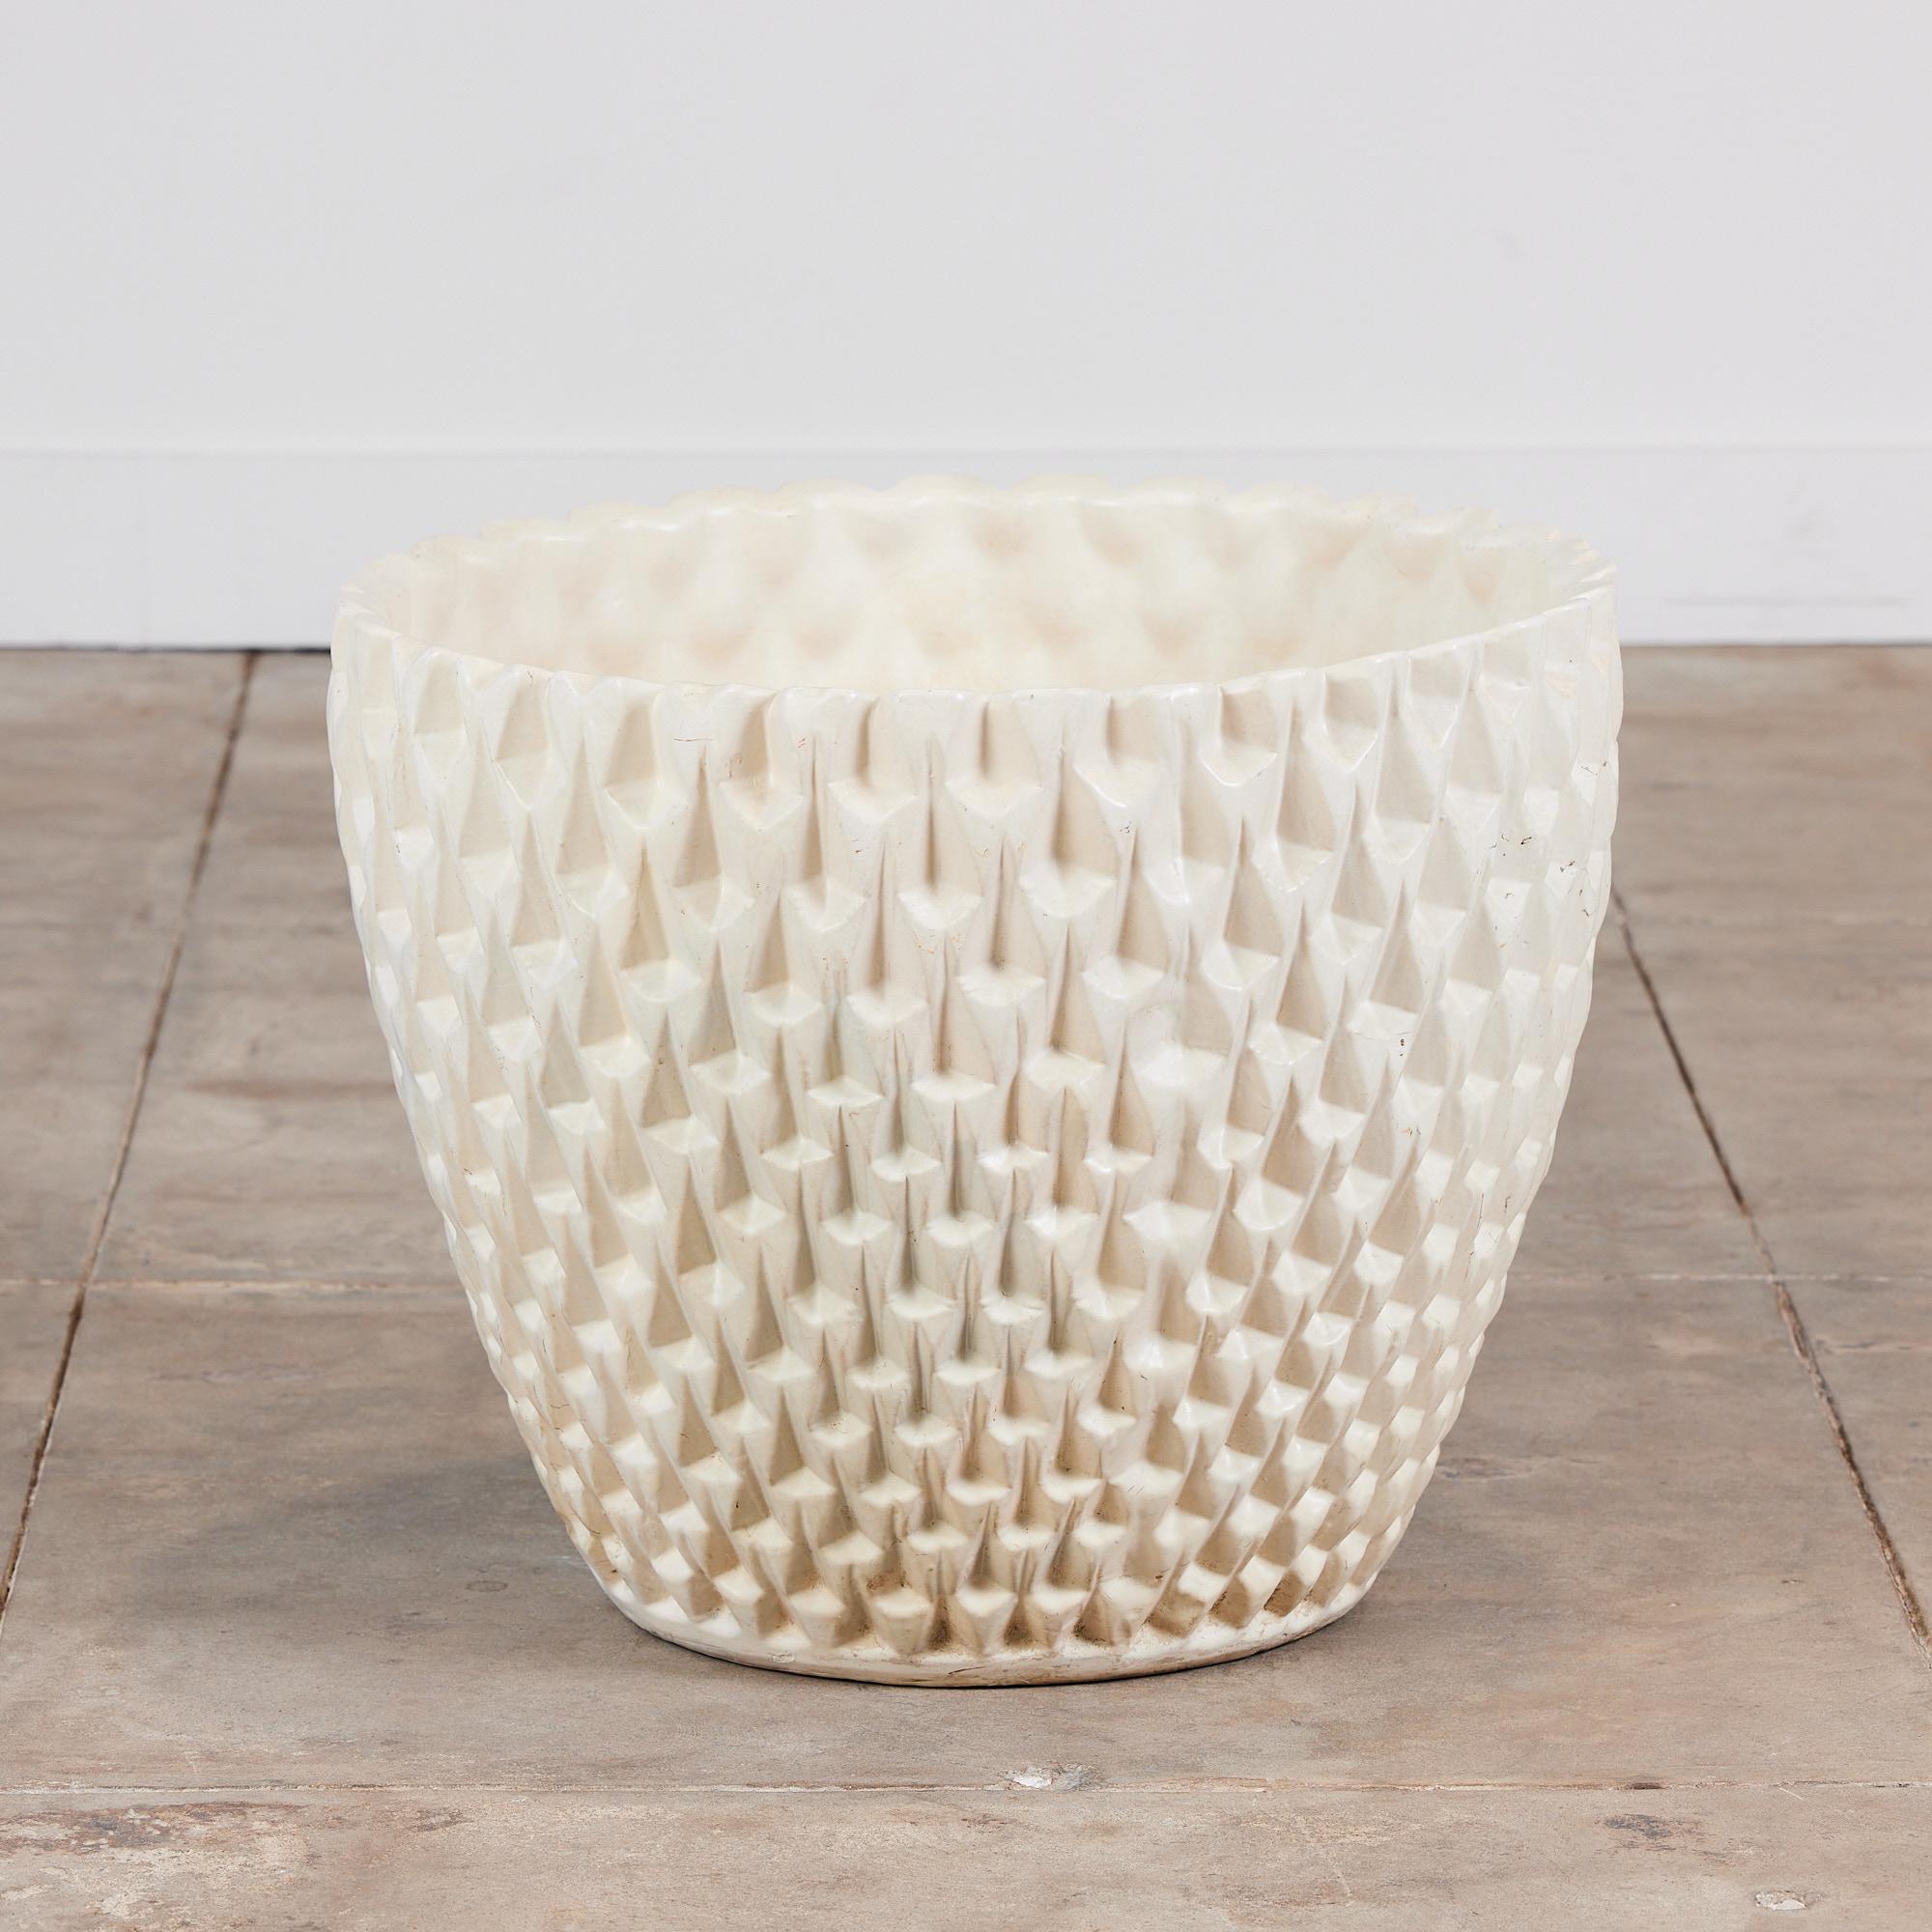 Américain Jardinière Phoenix-1 de David Cressey en glaçure blanche pour la poterie architecturale en vente